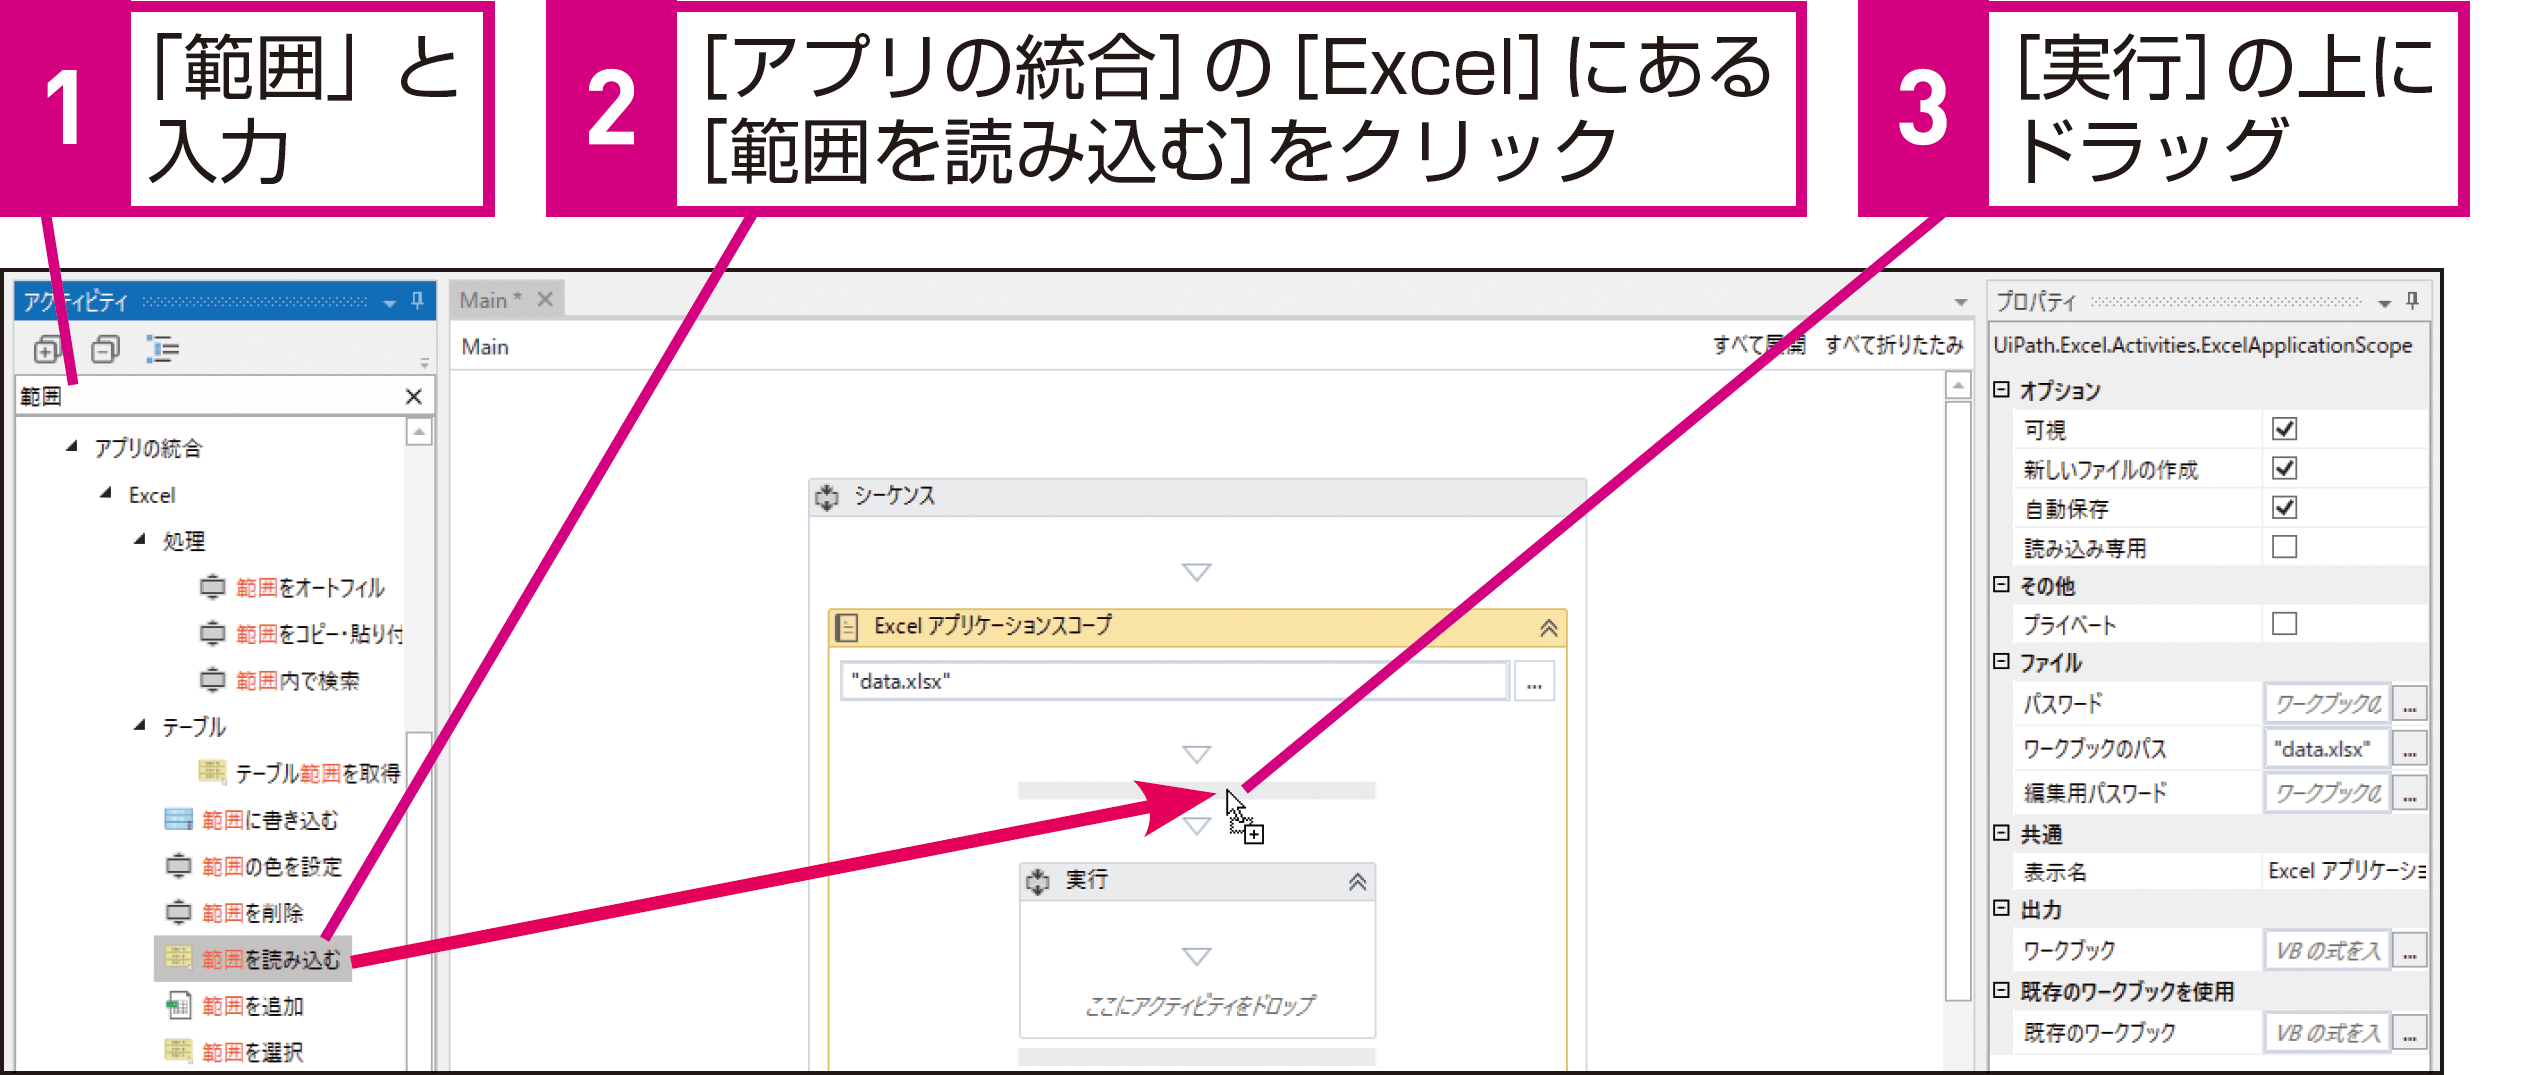 ExcelとWebアプリを自動処理するには 1(Excelファイルの読み込み） - できるUiPath